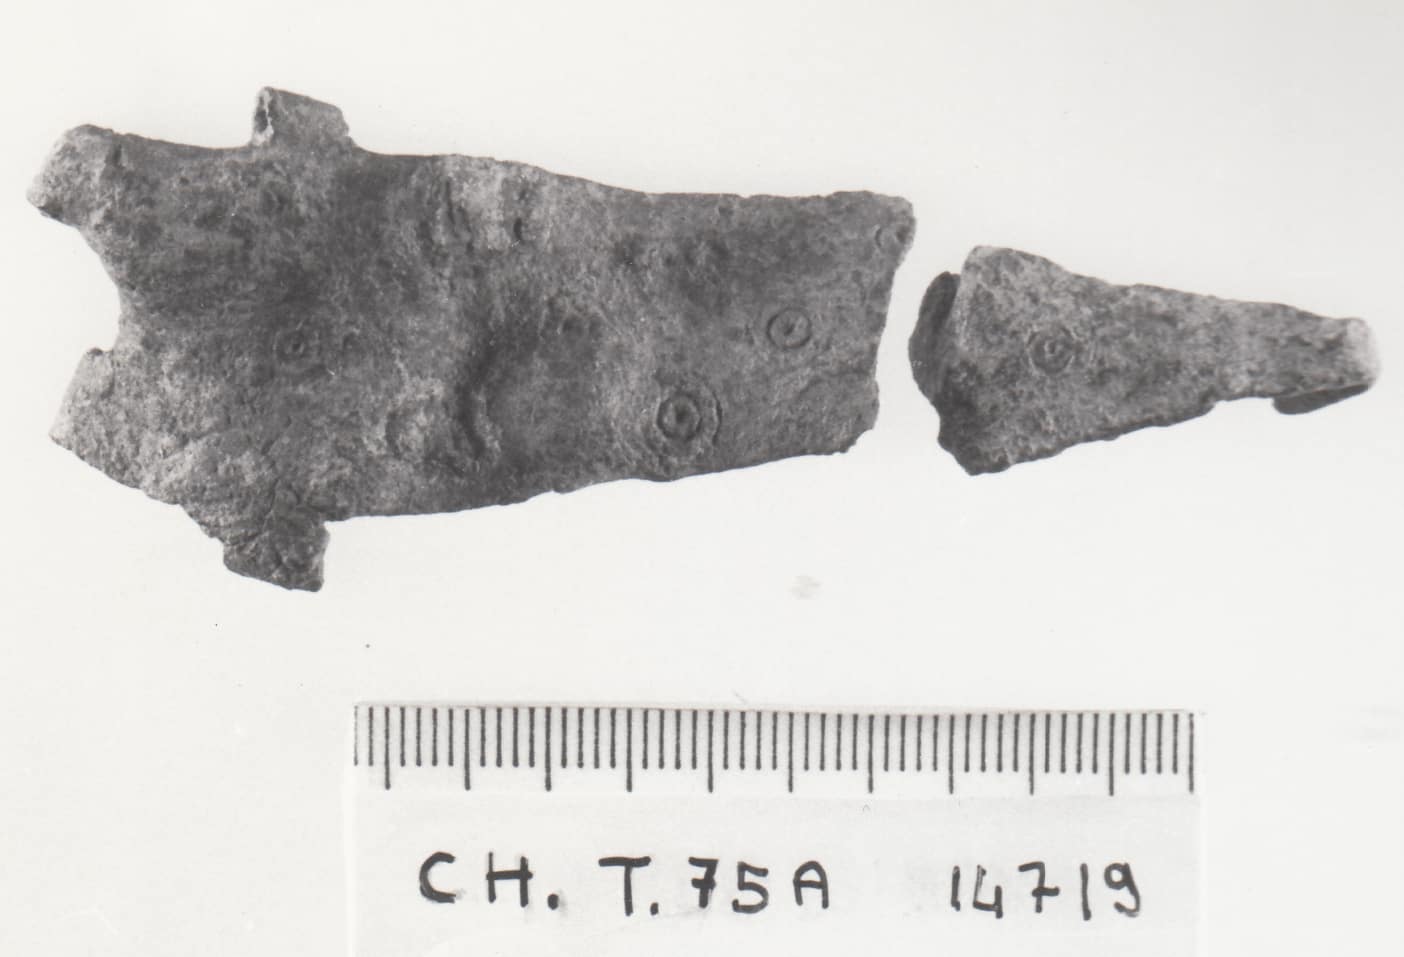 fermaglio di cintura - cultura ligure della prima età del Ferro (VII a.C)